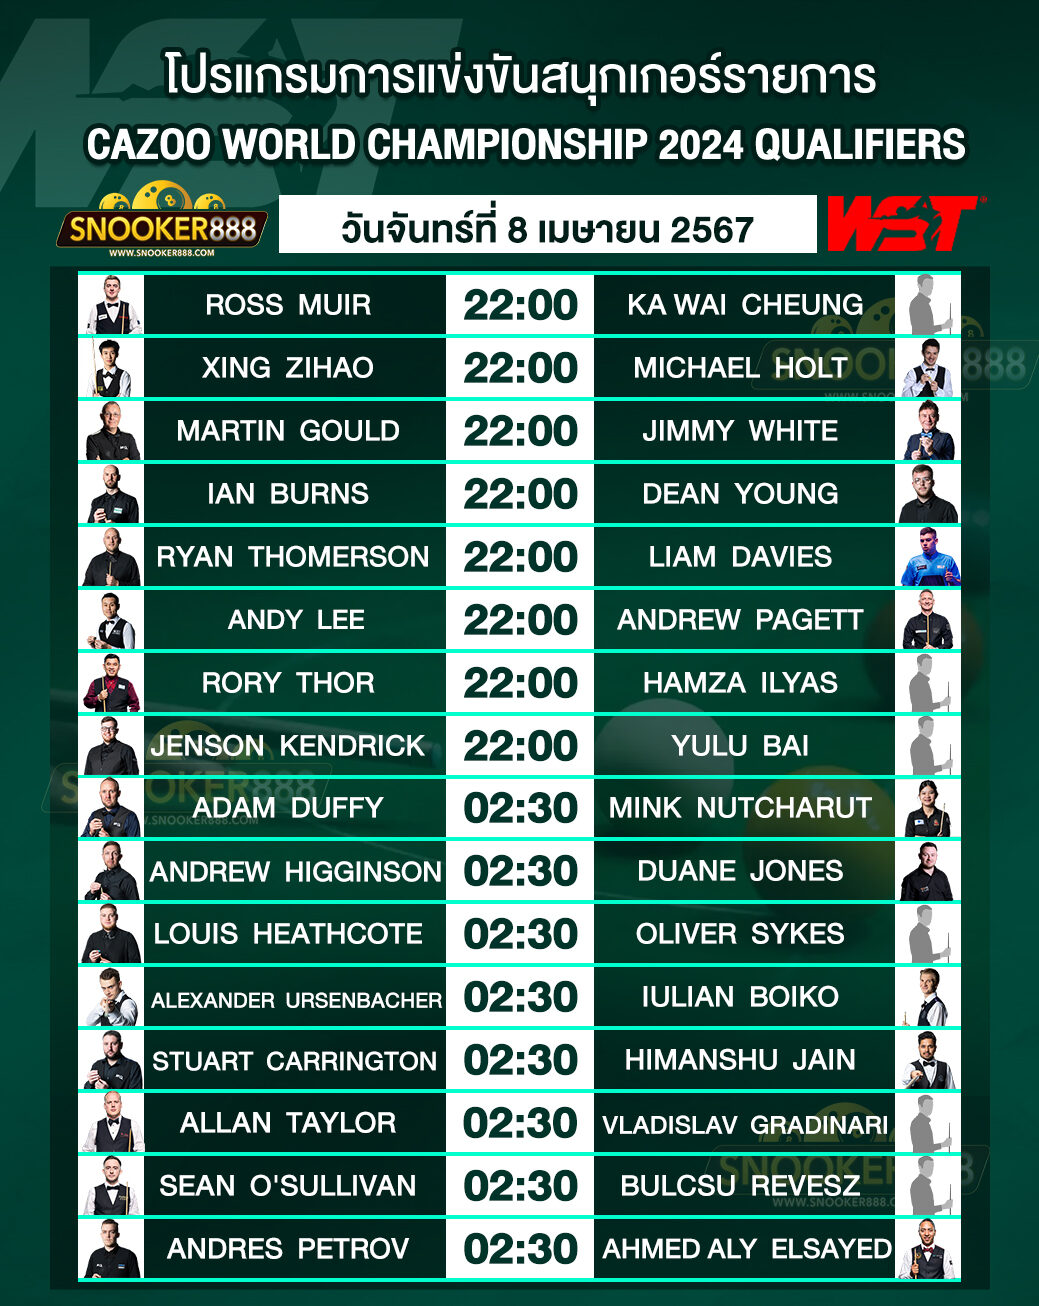 โปรแกรมการแข่งขันสนุกเกอร์ CAZOO WORLD CHAMPIONSHIP 2024 QUALIFIERS วันที่ 8 เม.ย. 67